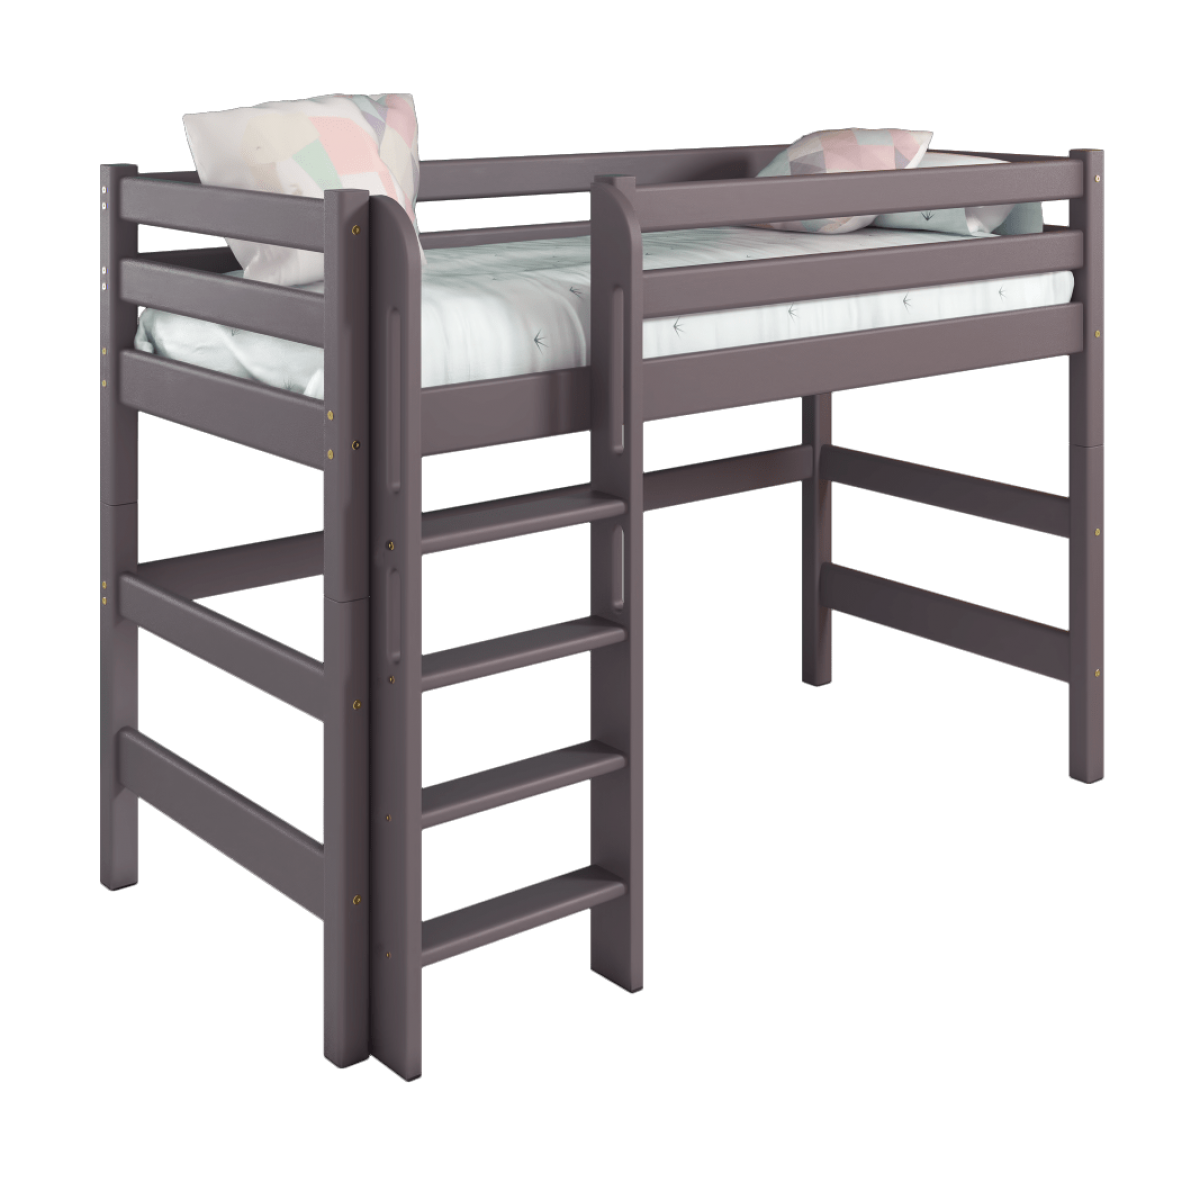 Детская (подростковая) полувысокая кровать (кровать-чердак) Соня с прямой лестницей (лаванда)